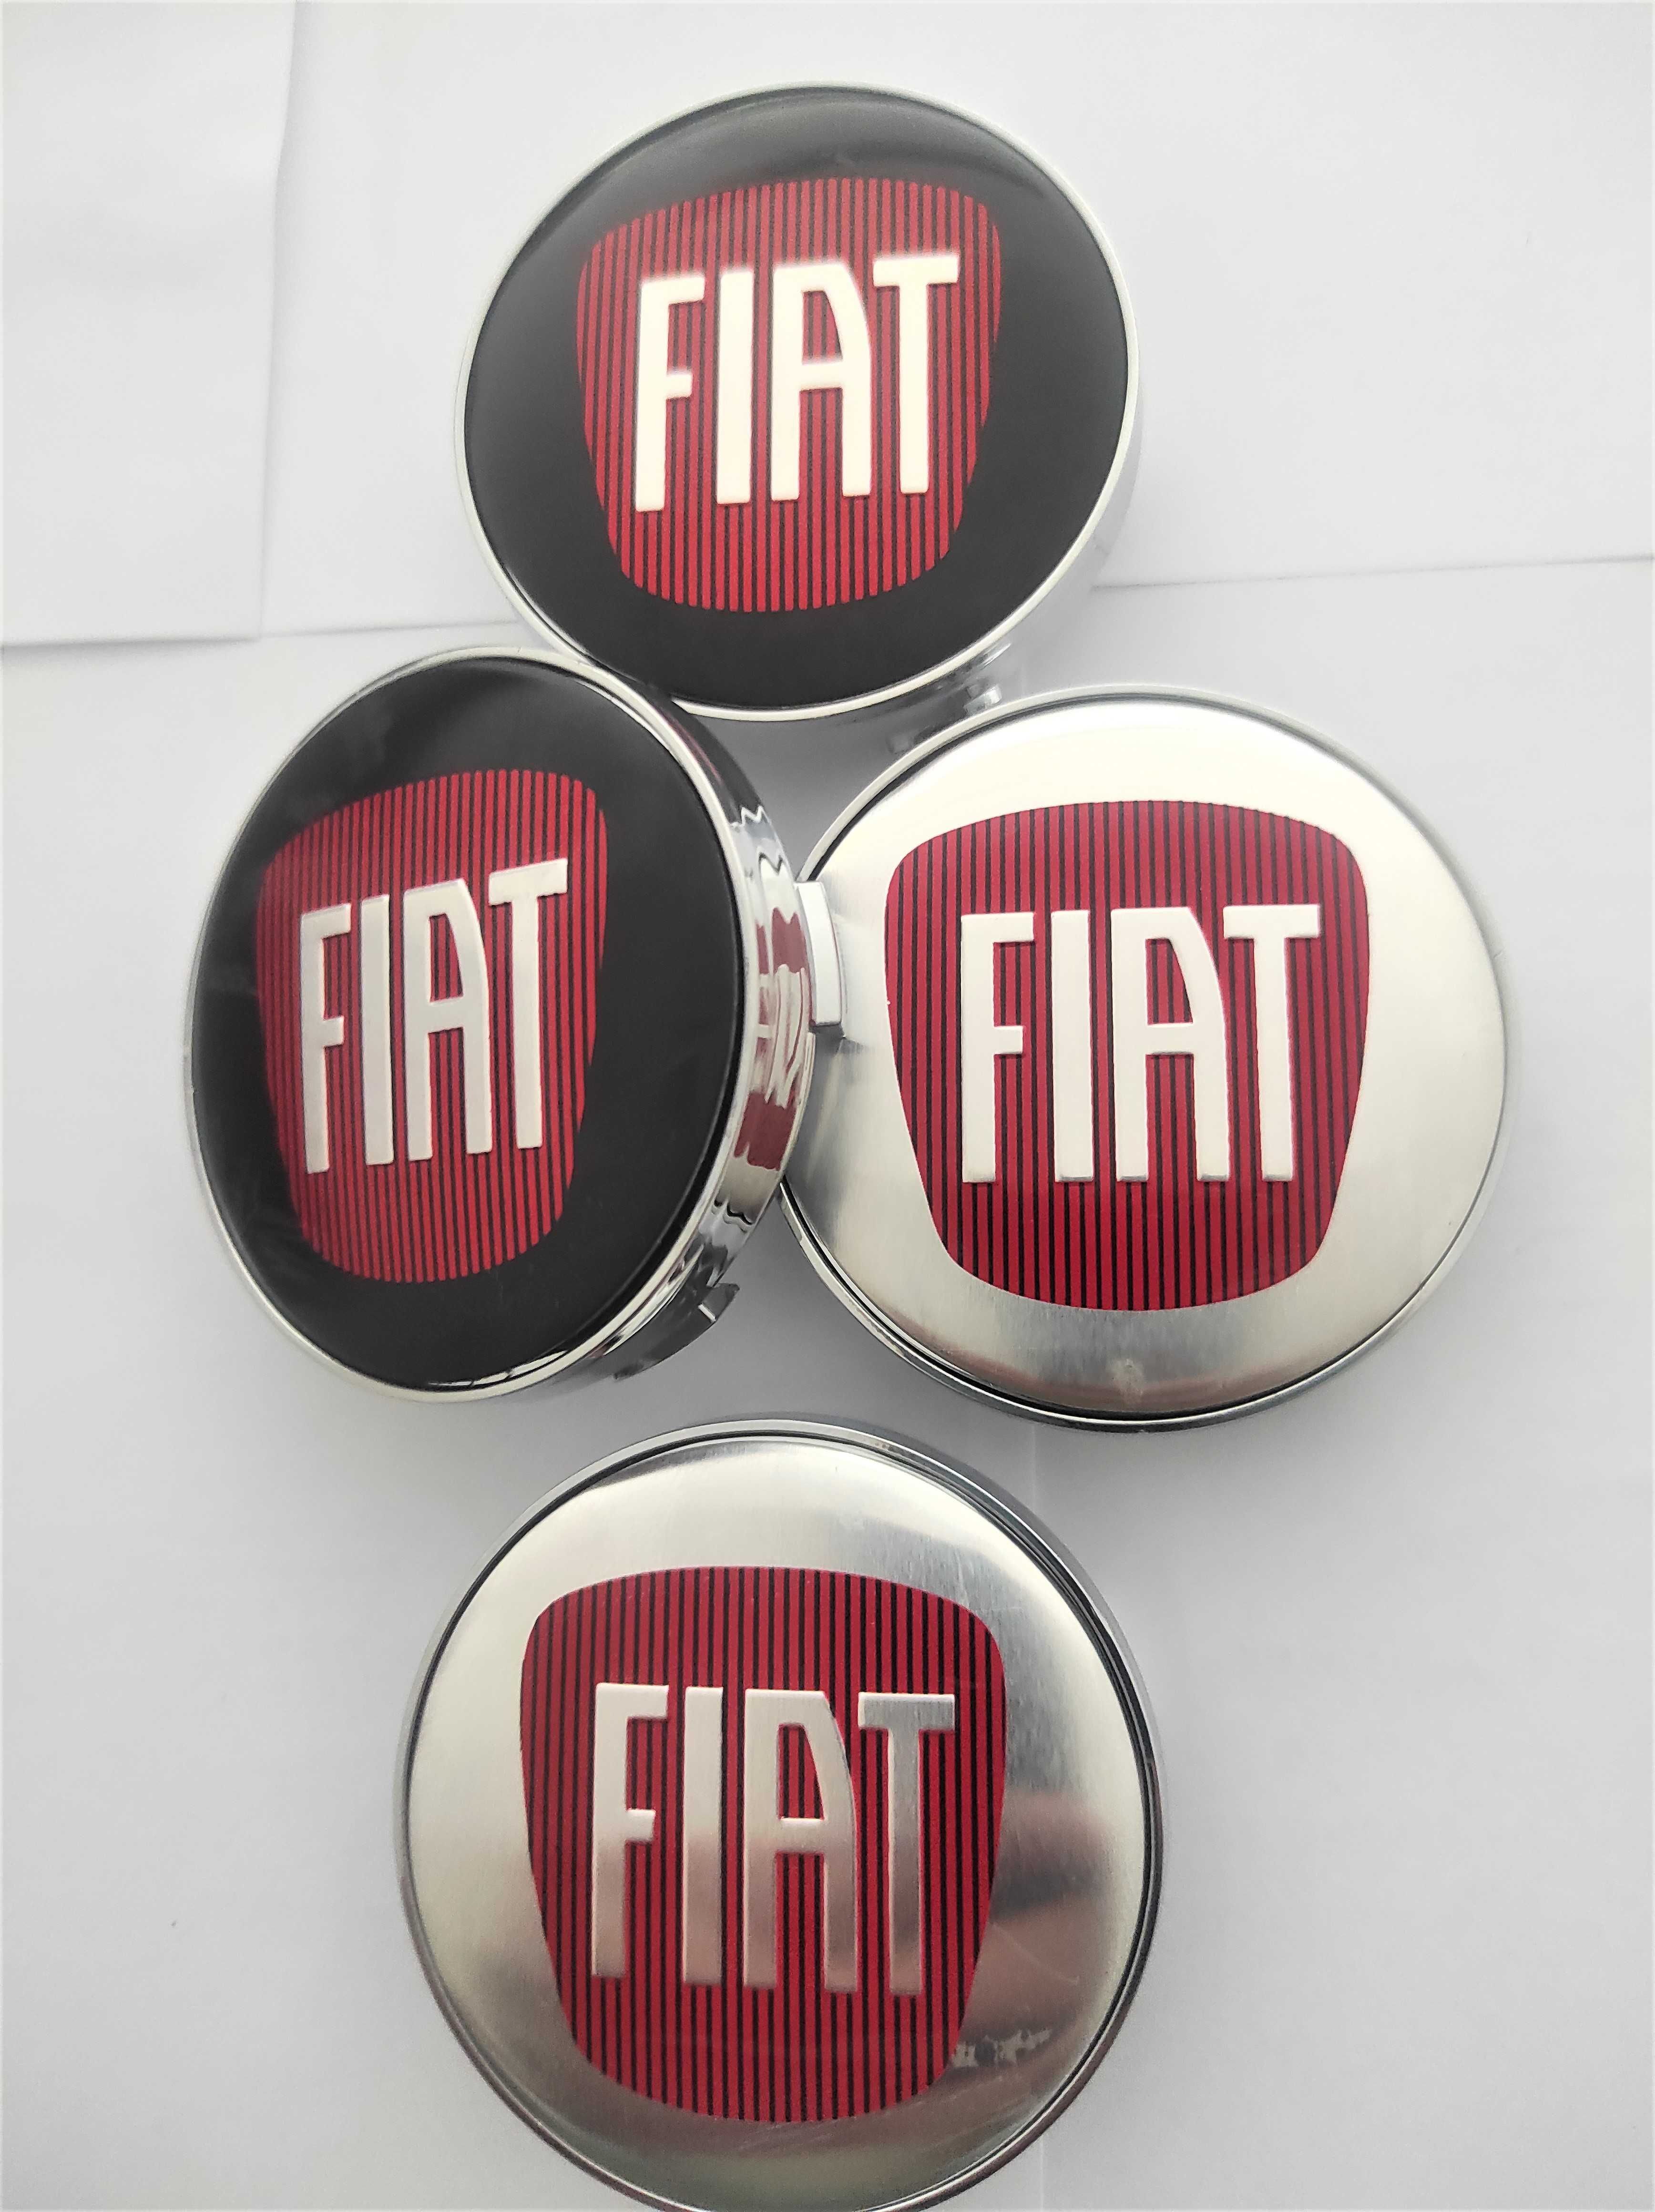 Капачки за Джанти за ФИАТ/FIAT 60 мм. Цвят: Сребристи и черни. НОВИ!